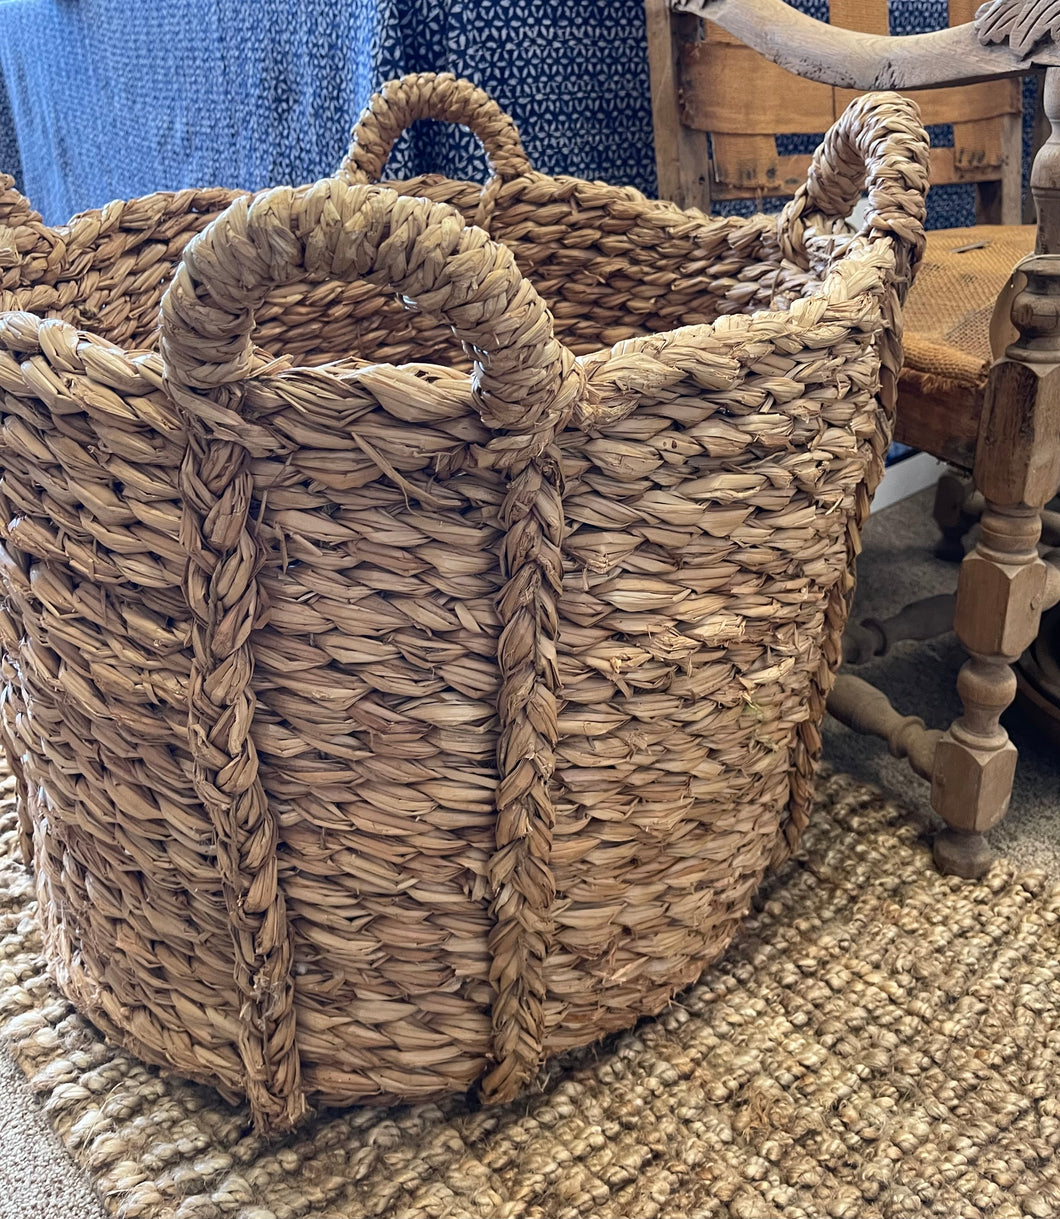 Large Seagrass Log Basket